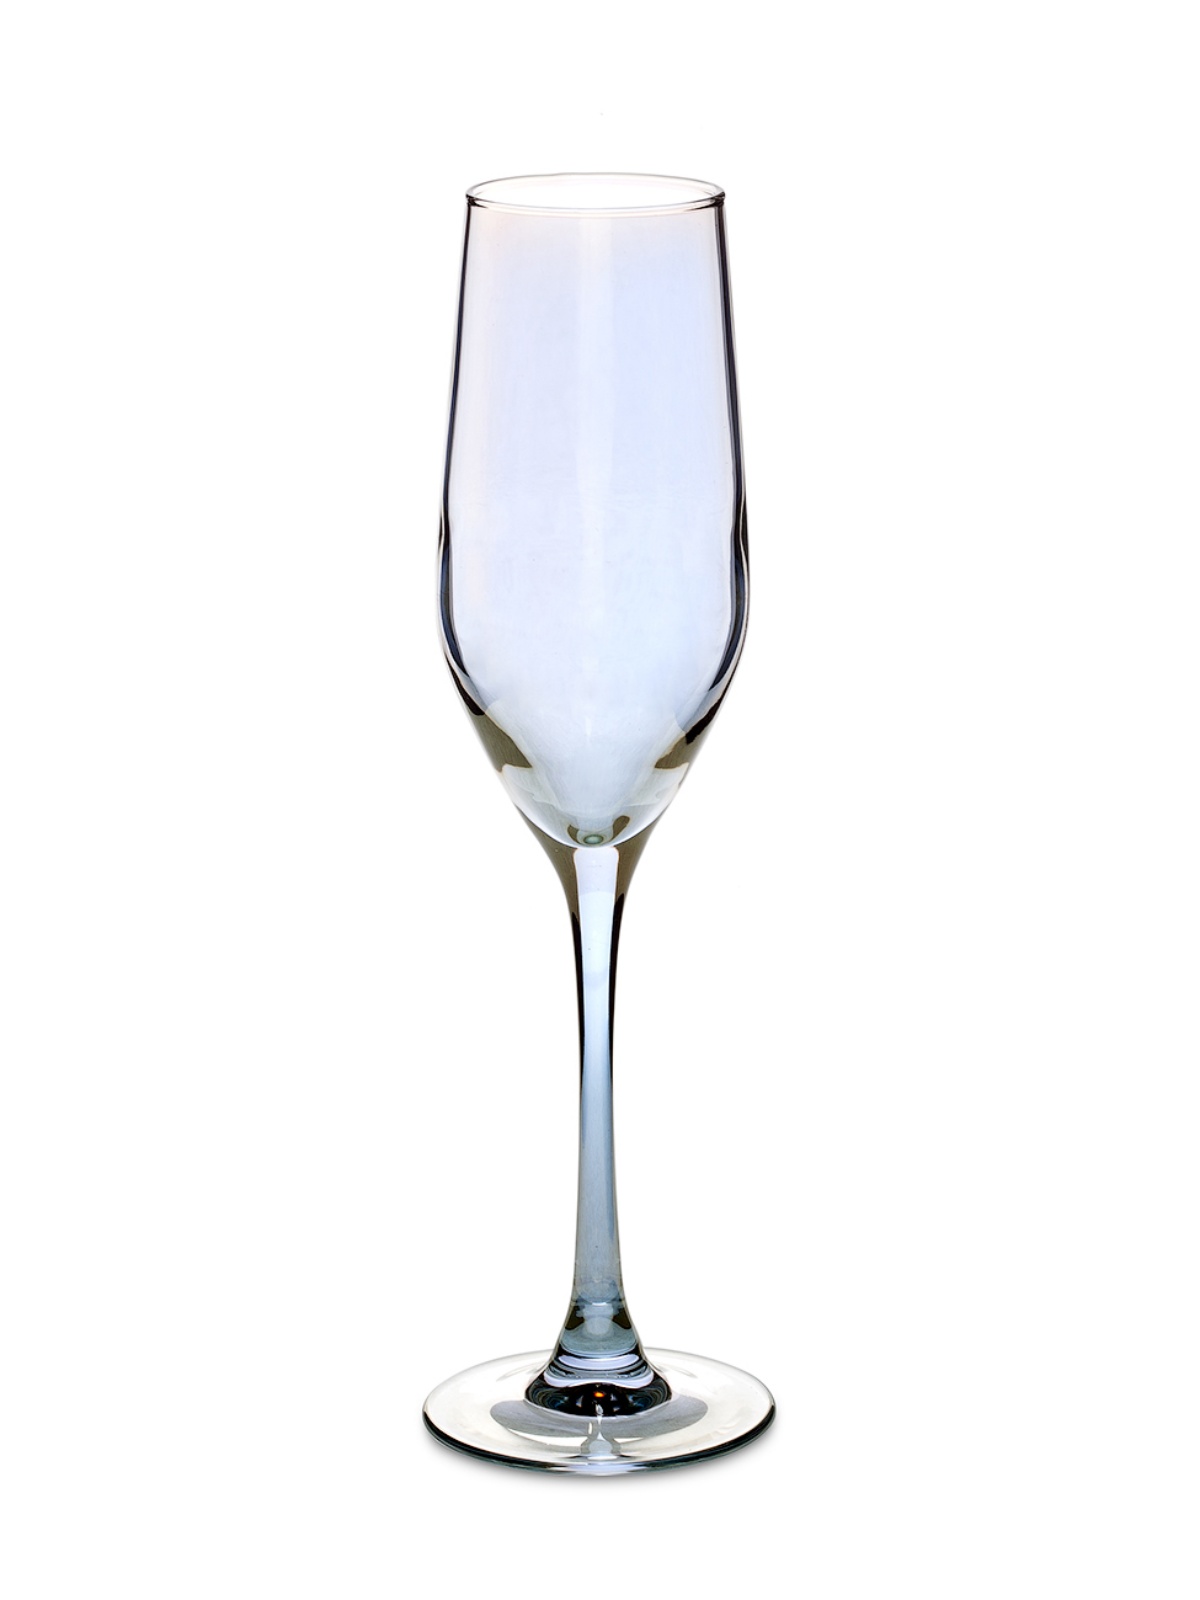 Набор бокалов для шампанского СЕЛЕСТ ЗОЛОТИСТЫЙ ХАМЕЛЕОН 6шт 160мл LUMINARC P1636 набор бокалов luminarc селест золотистый хамелеон 6шт 160мл шампанское стекло